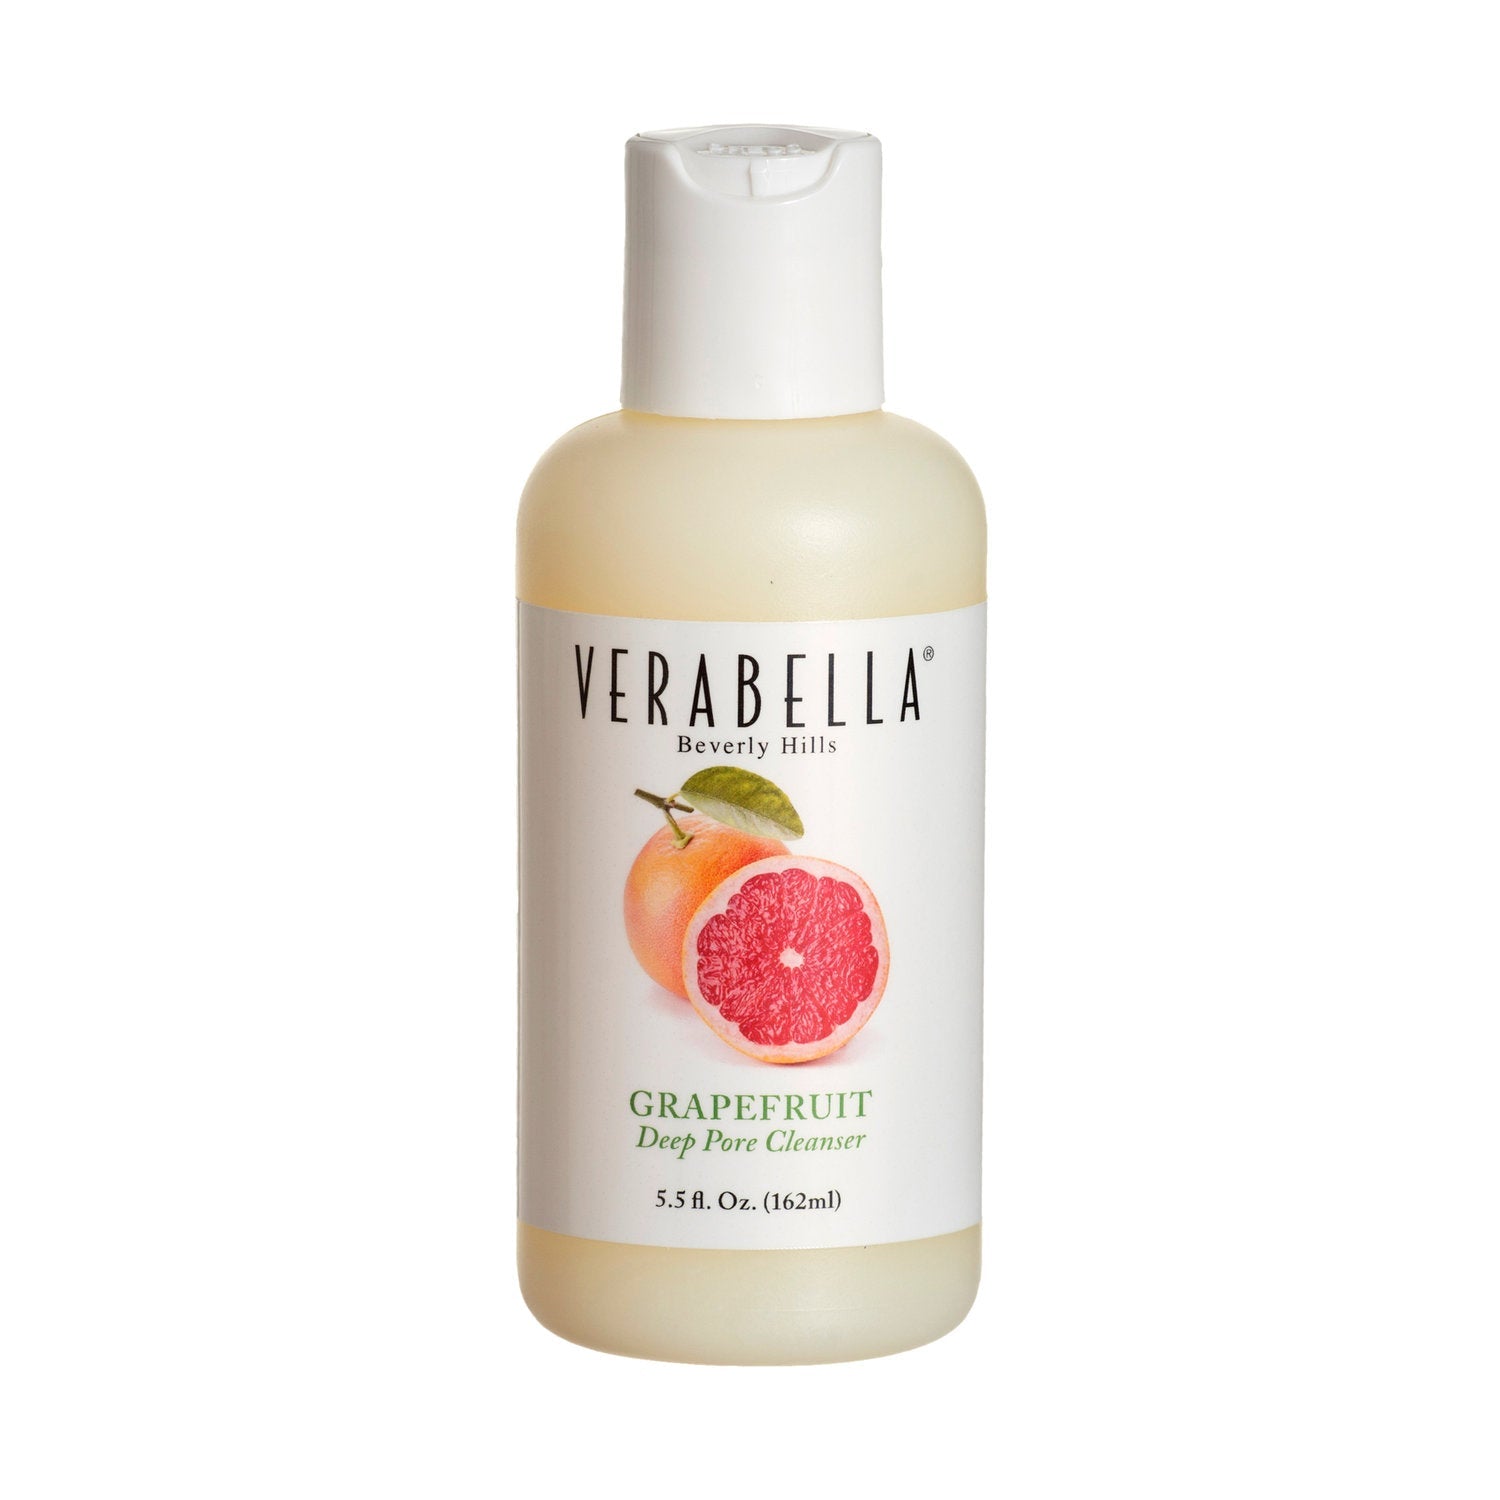 VERABELLA Grapefruit Deep Pore Cleanser